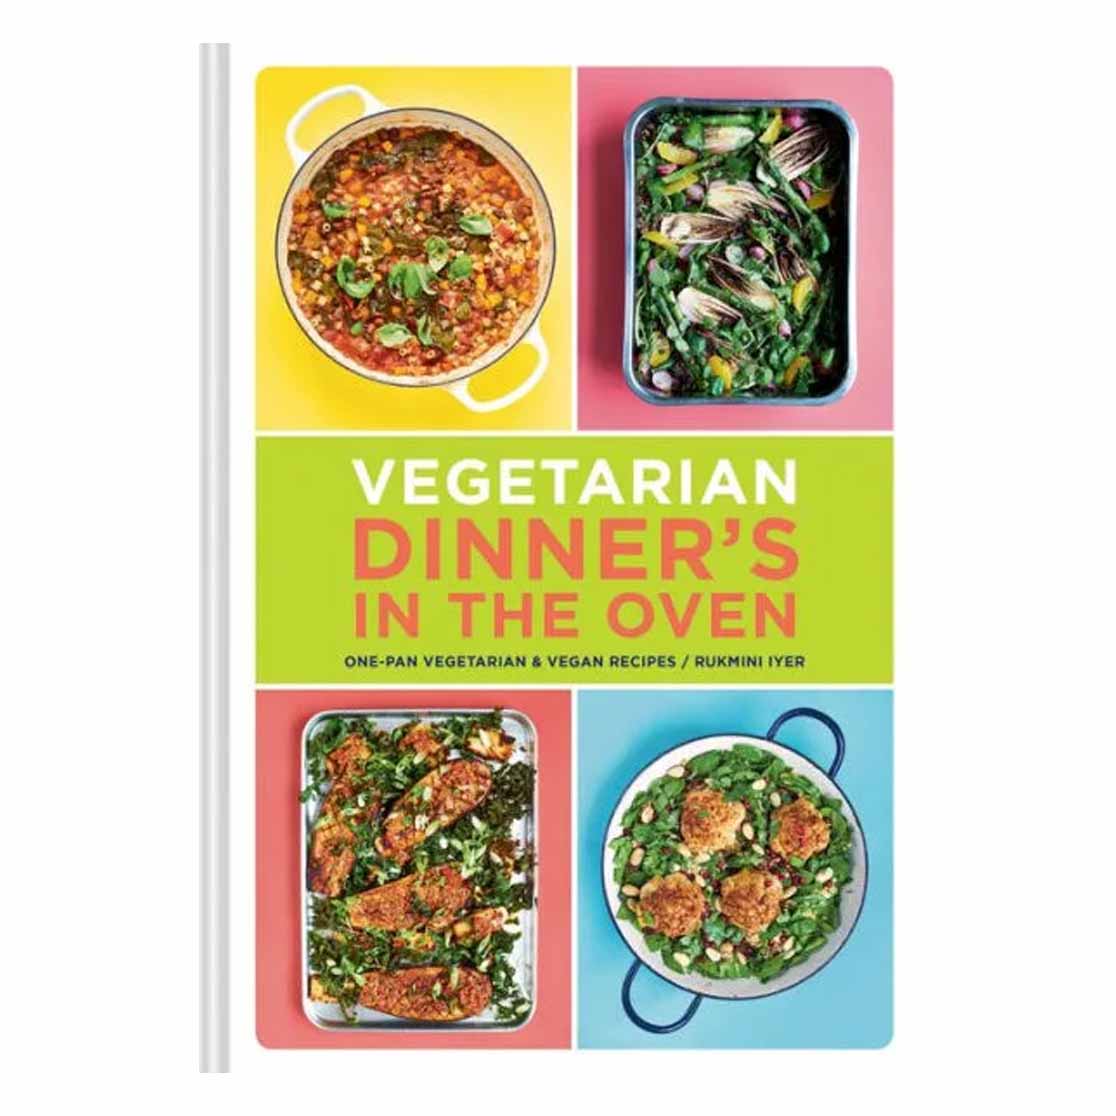 Vegetarian Dinner's in the Oven cookbook